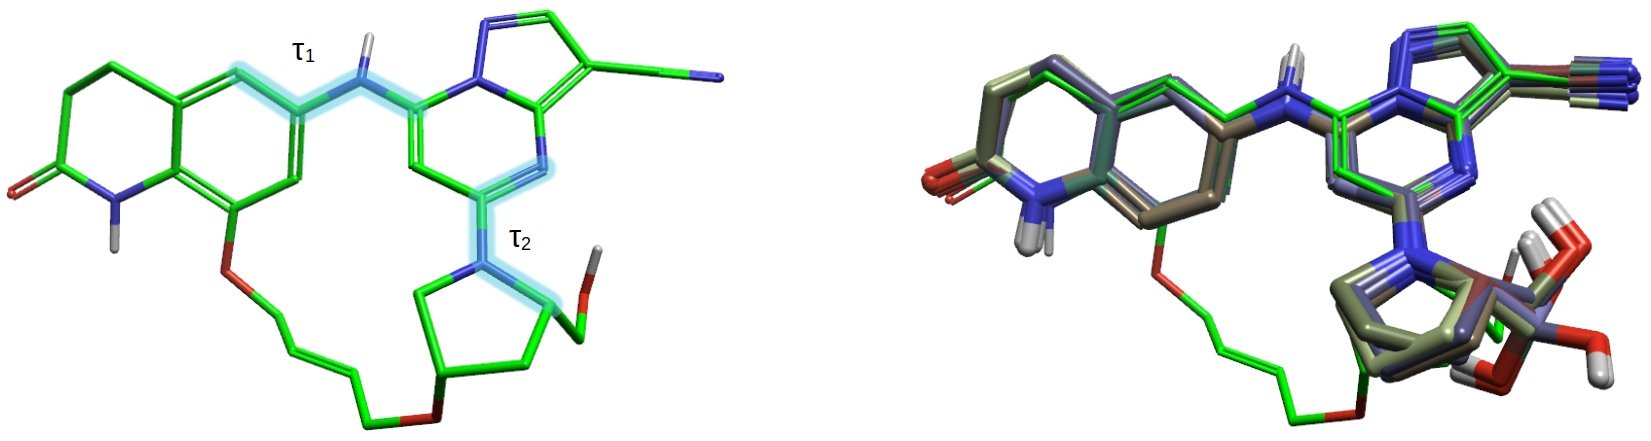 化合物11的生物活性构象（绿色）与化合物8的8个生物活性构象（棍棒模型）叠合比较